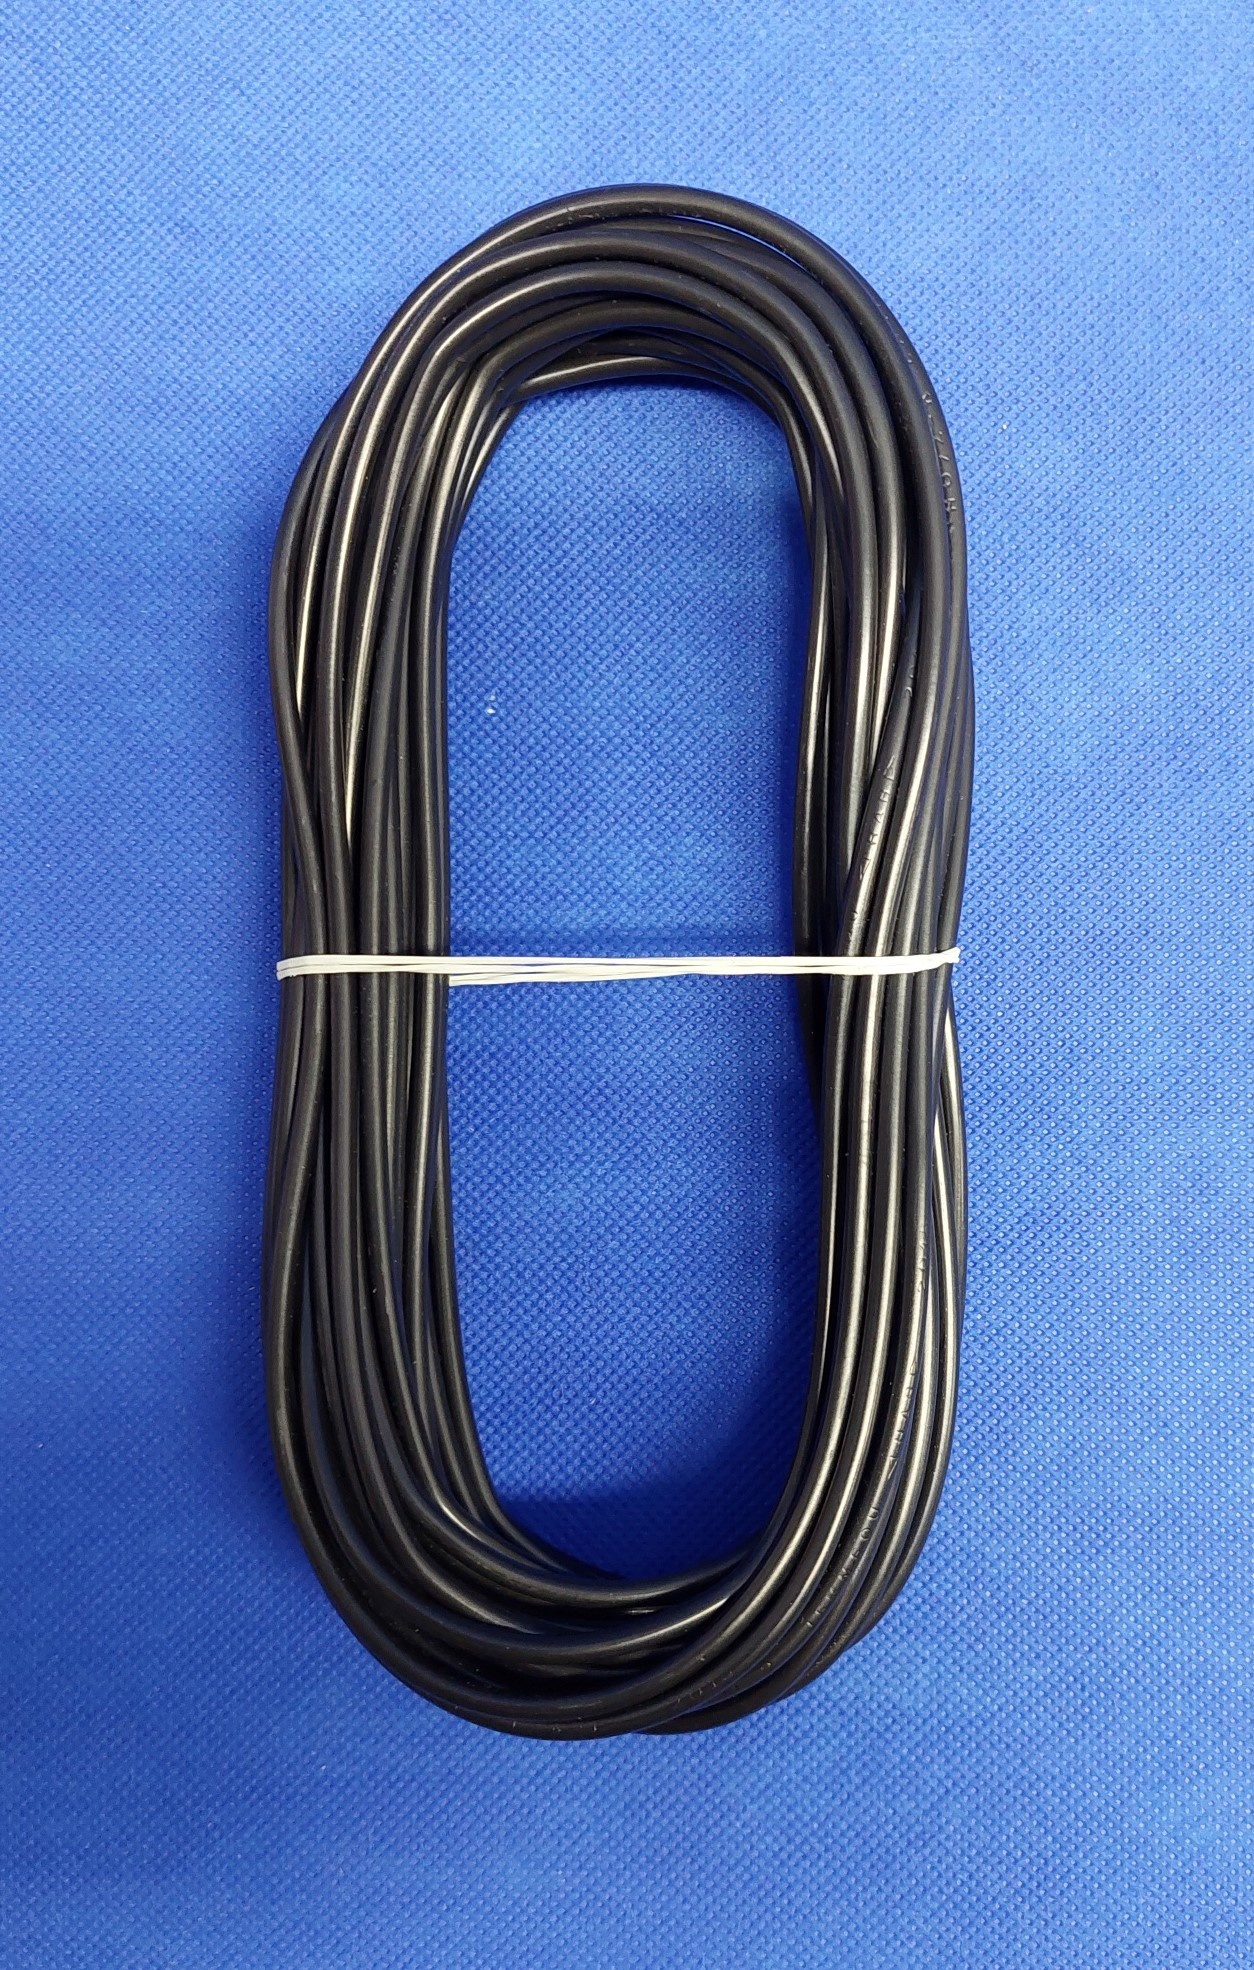 Verrast Verbieden Port Lapp kabel H07Z-K -90°C - 1x mm2 - Zwart - halogeenvrij - per 10m. -  Cable-Engineer.nl